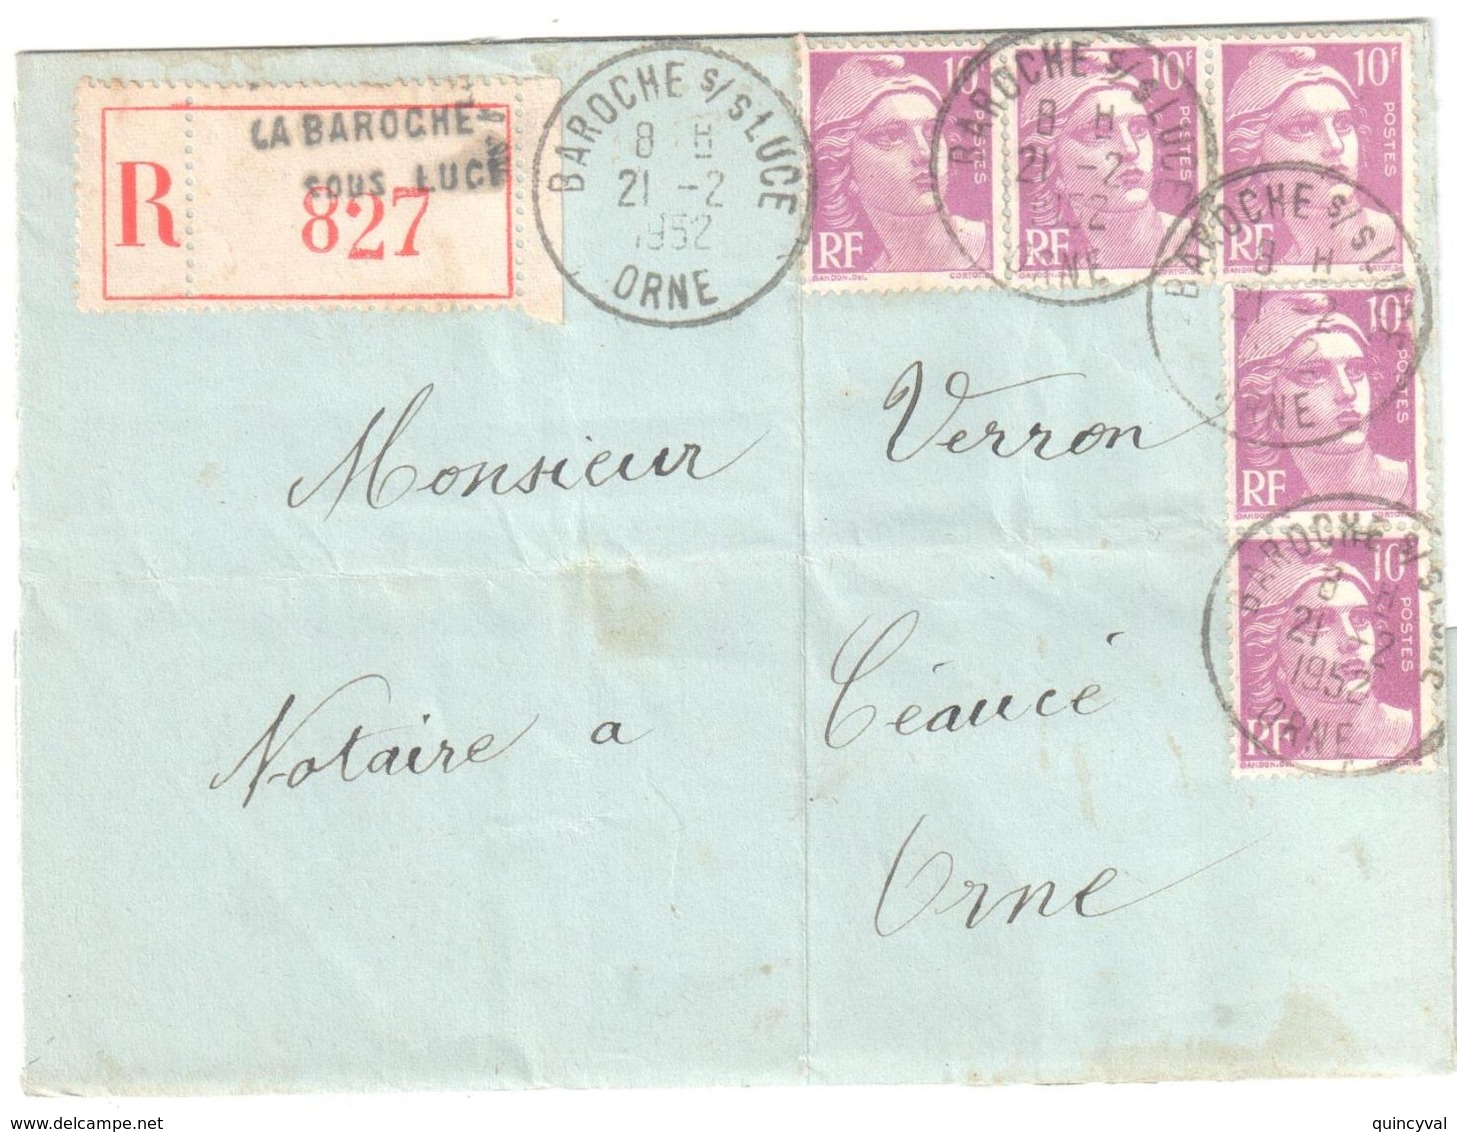 BAROCHE Sous LUCE (LA) Orne Lettre Recommandée 10 F Gandon Lilas Yv 811 Ob 21 2 1952 - Lettres & Documents